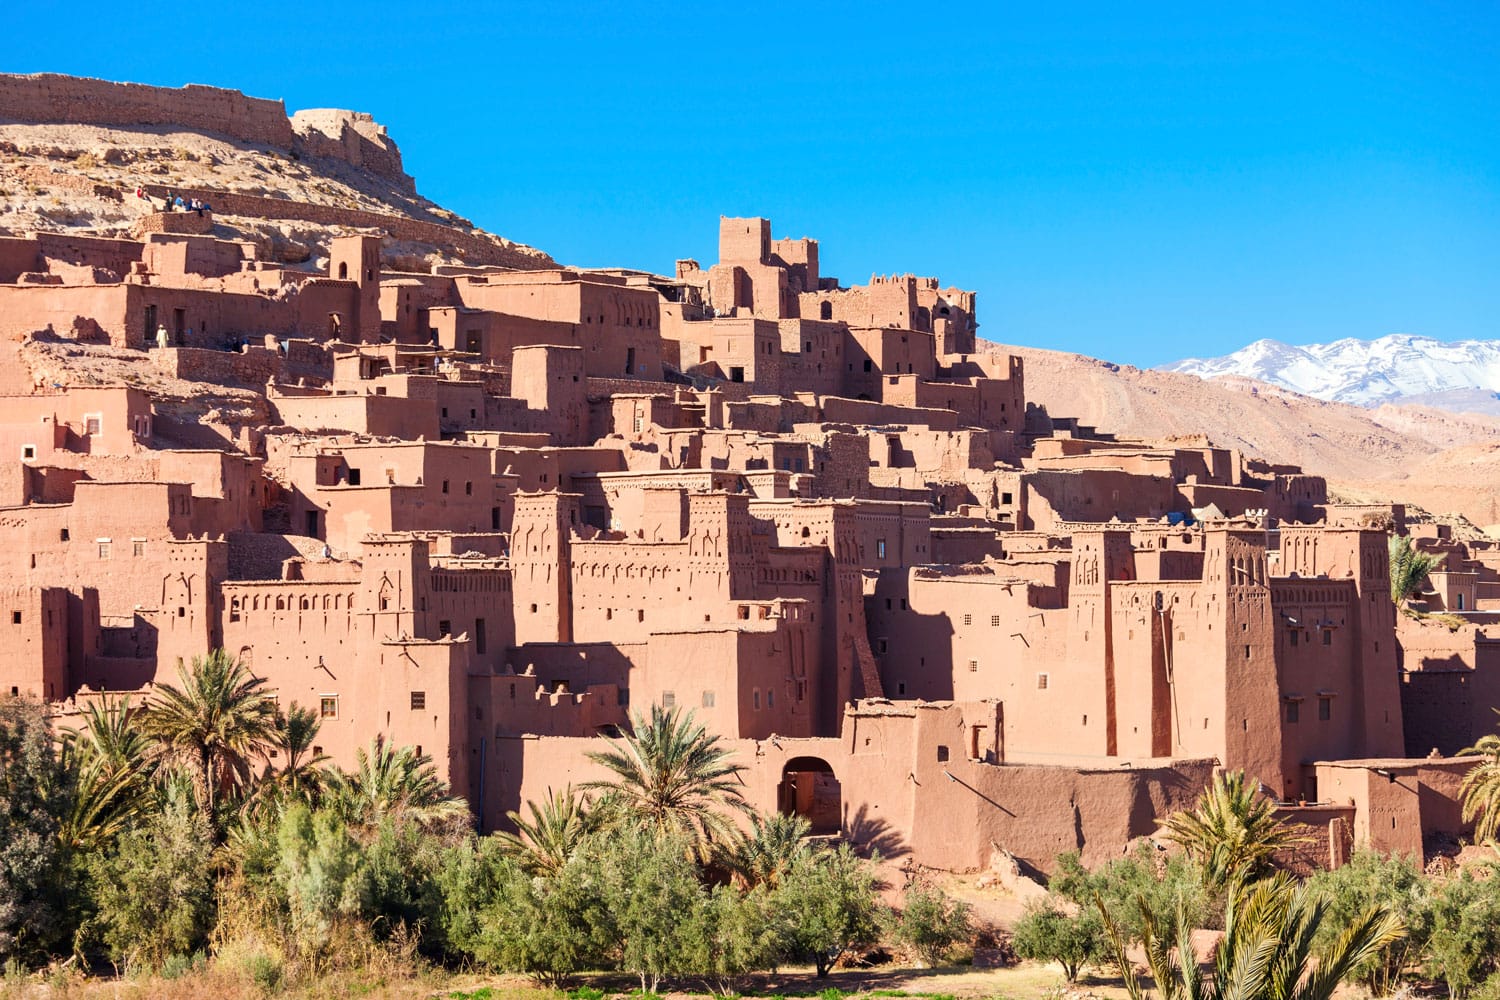 Ait Ben Haddou (atau Ait Benhaddou) adalah kota berbenteng di sepanjang rute karavan kuno antara Sahara dan Marrakech di Maroko